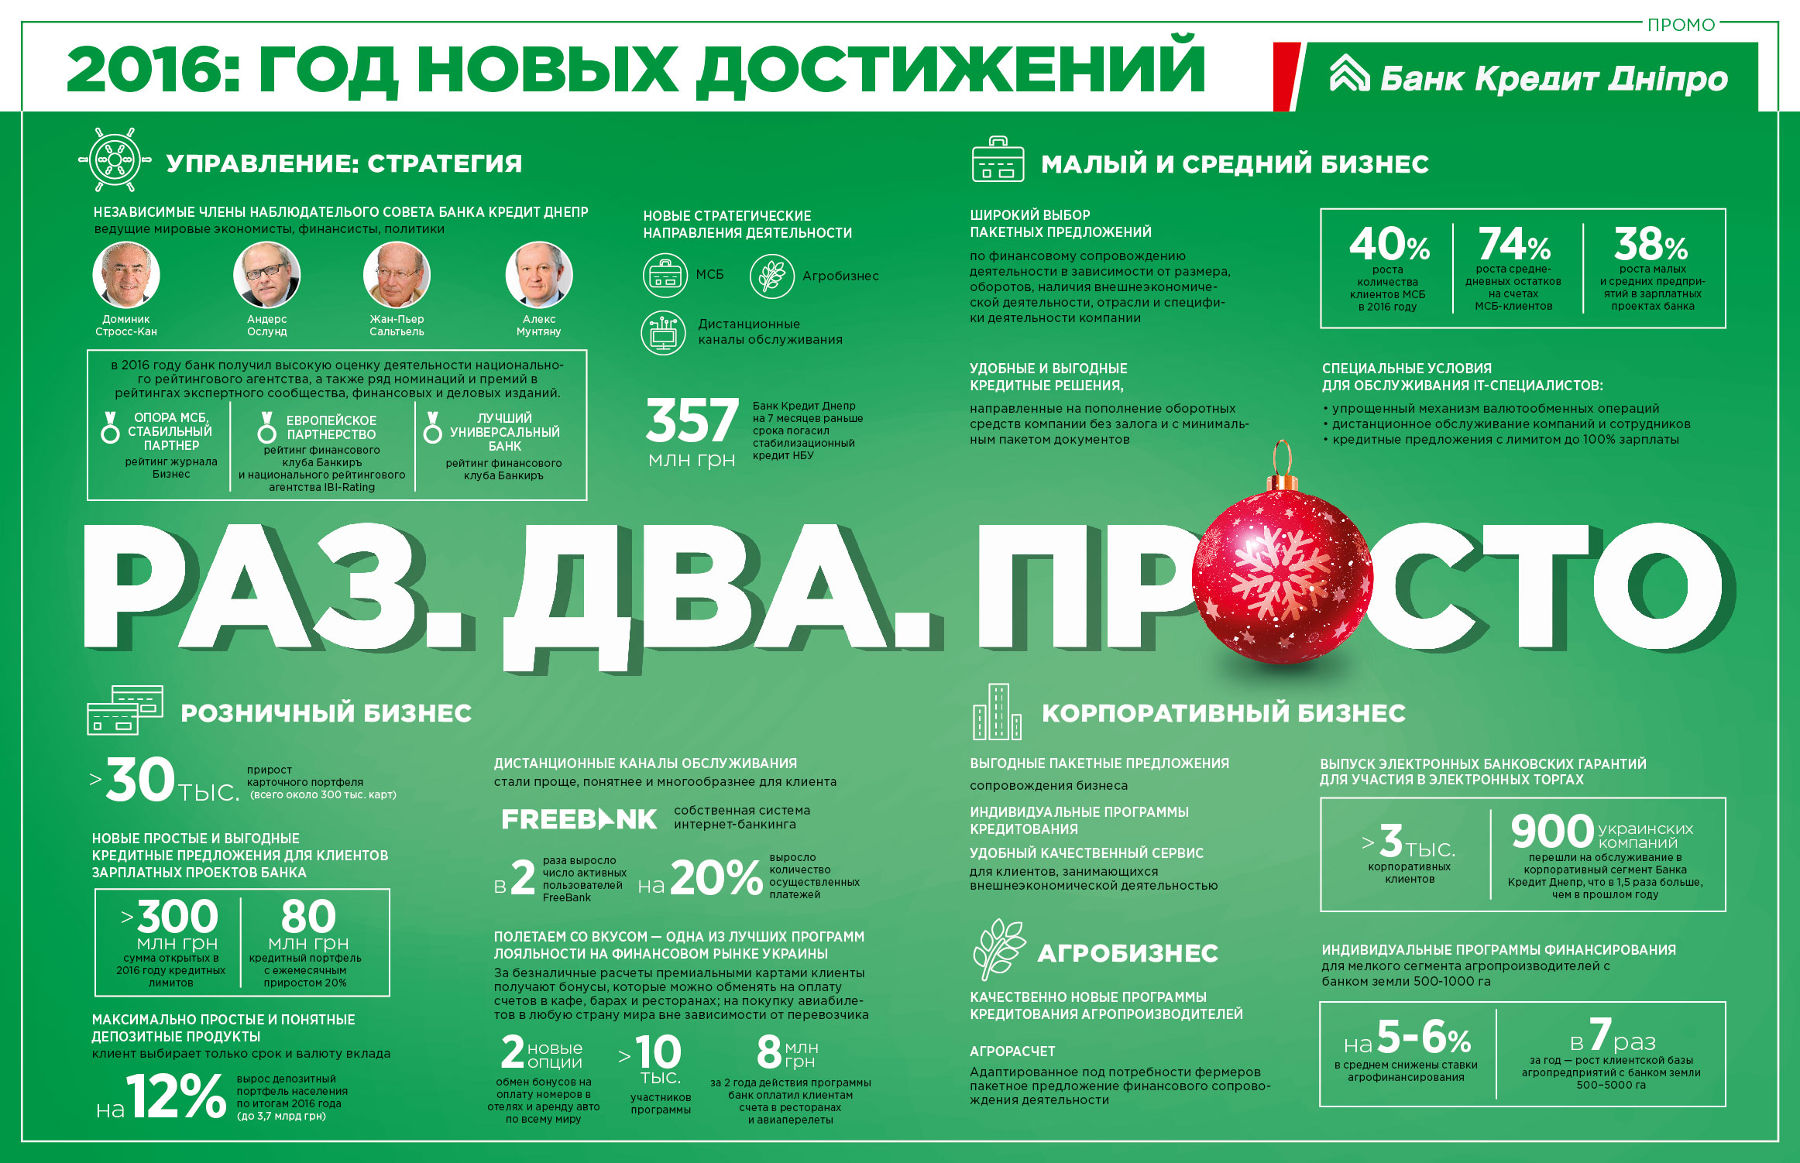 Досягнення та фінансові показники Банку Кредит Дніпро в 2016 році